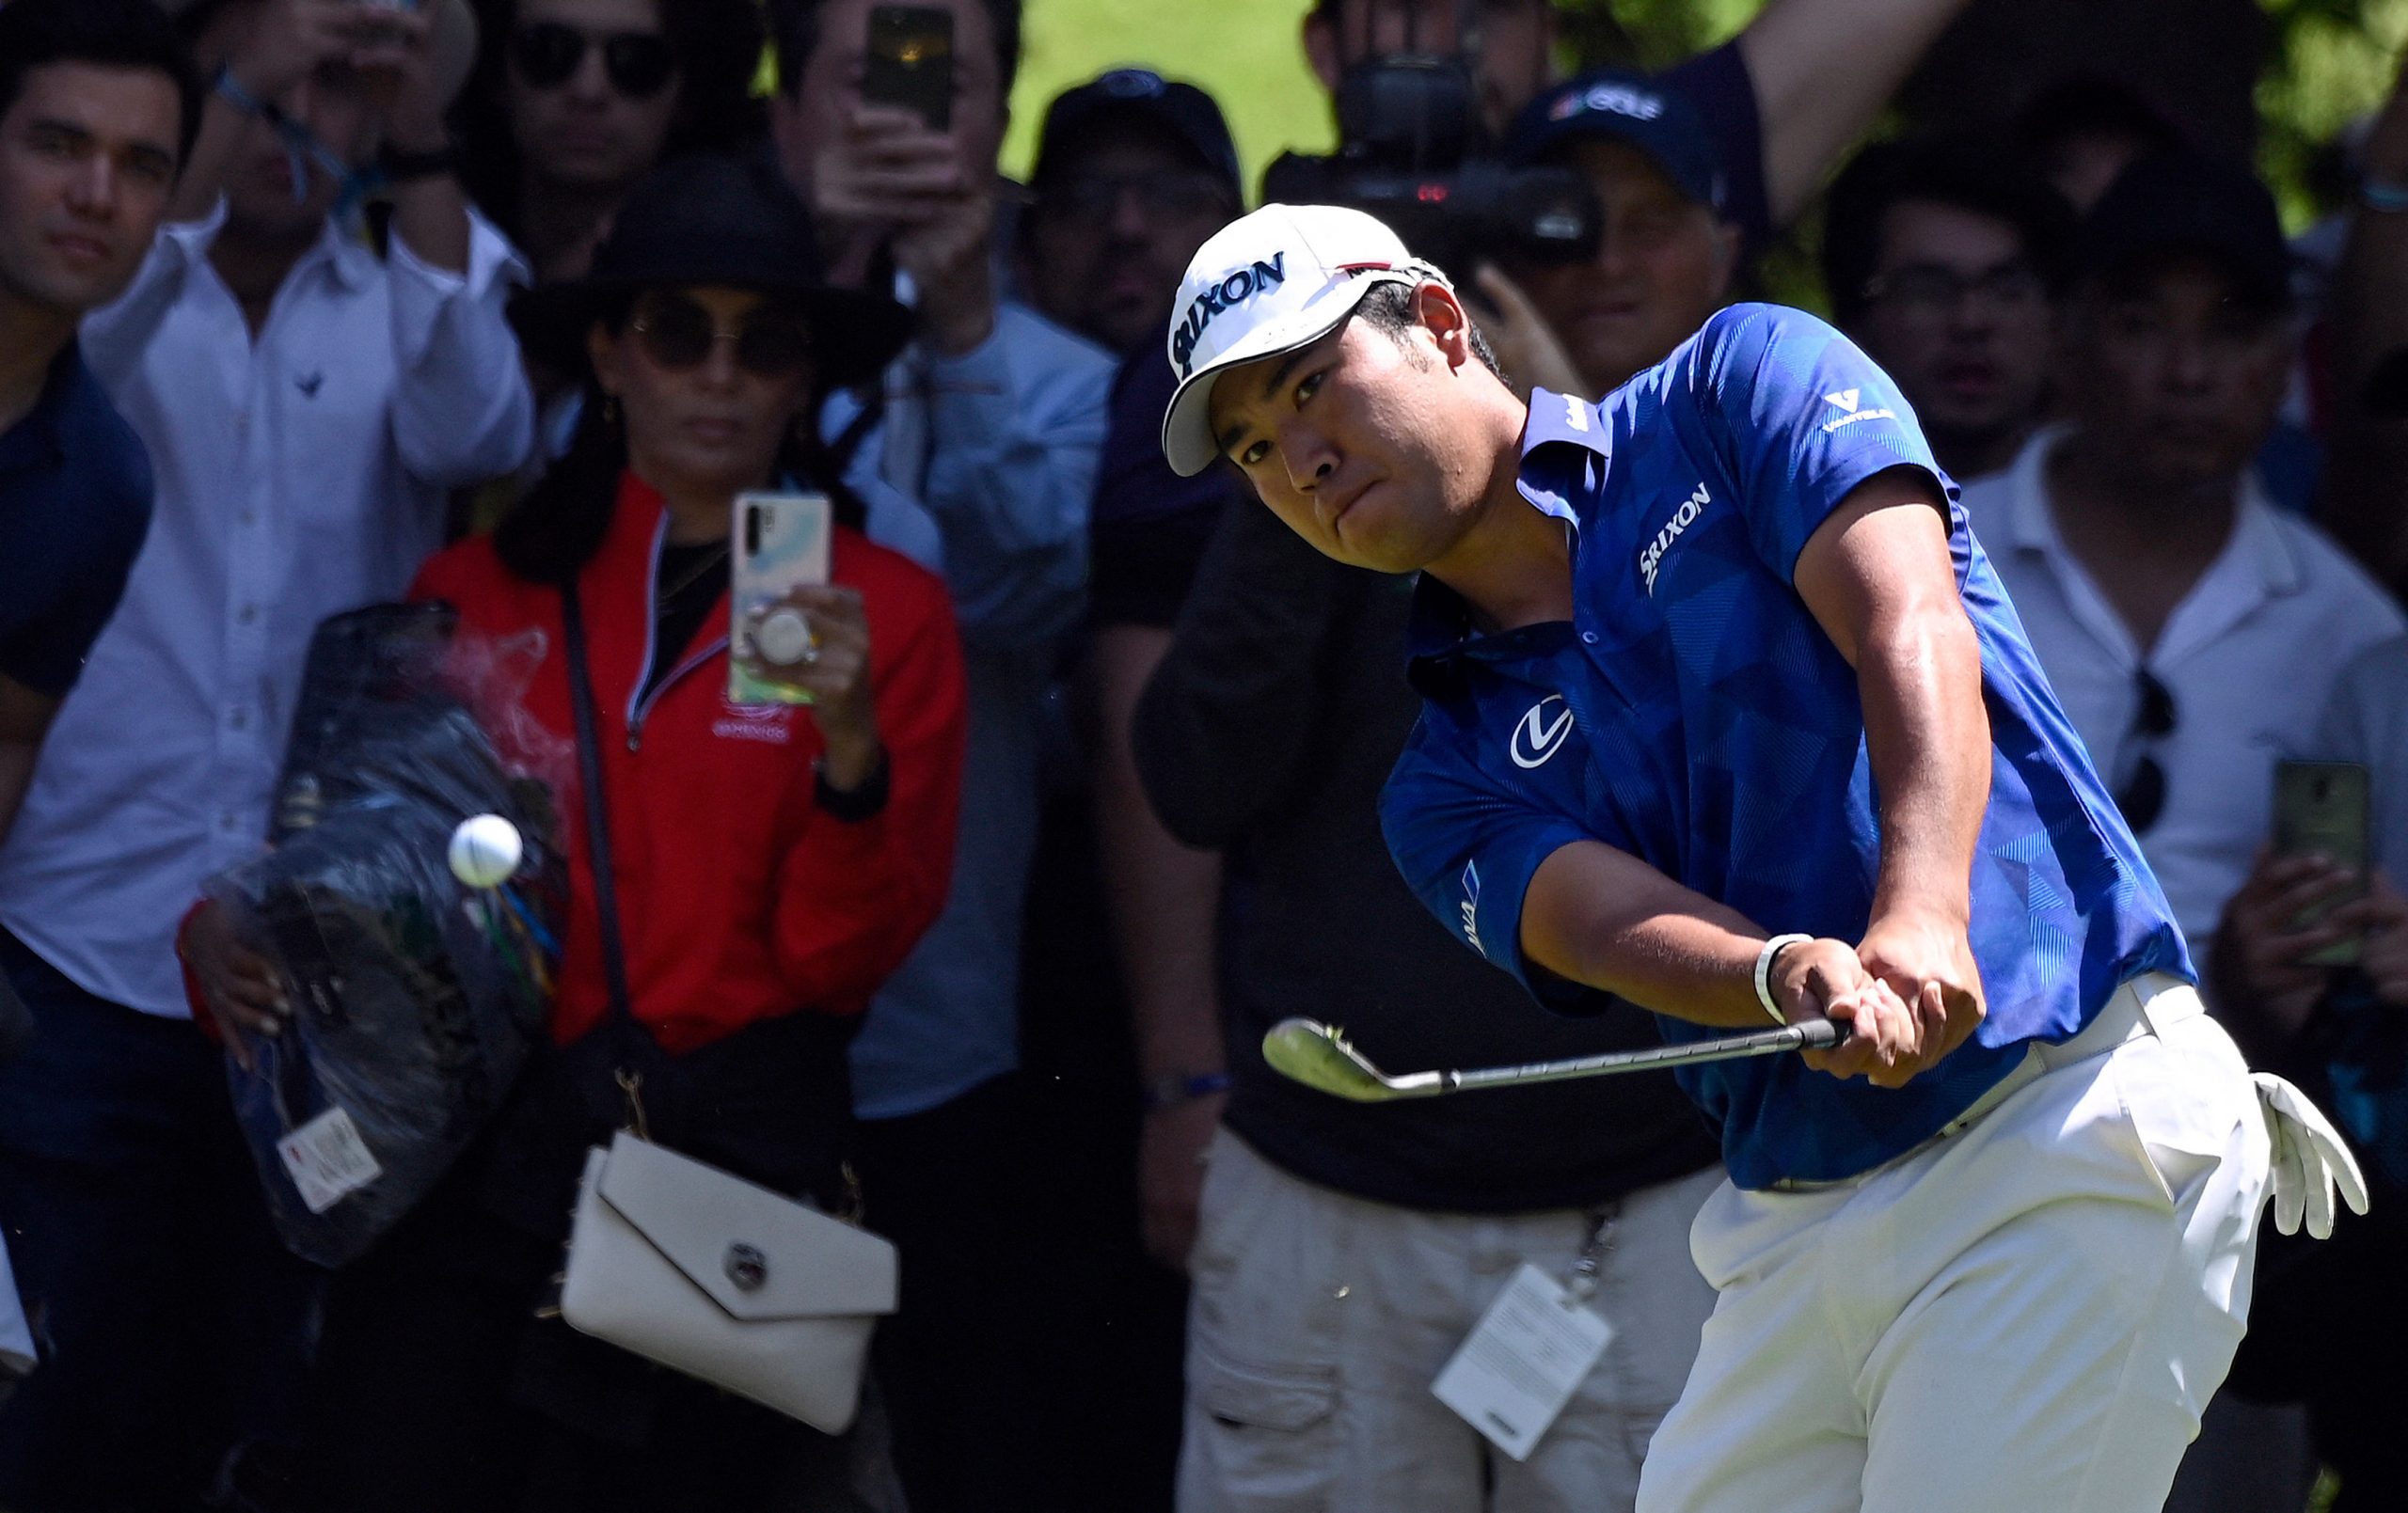 Golfer Hideki Matsuyama becomes first Japanese man to win Masters title